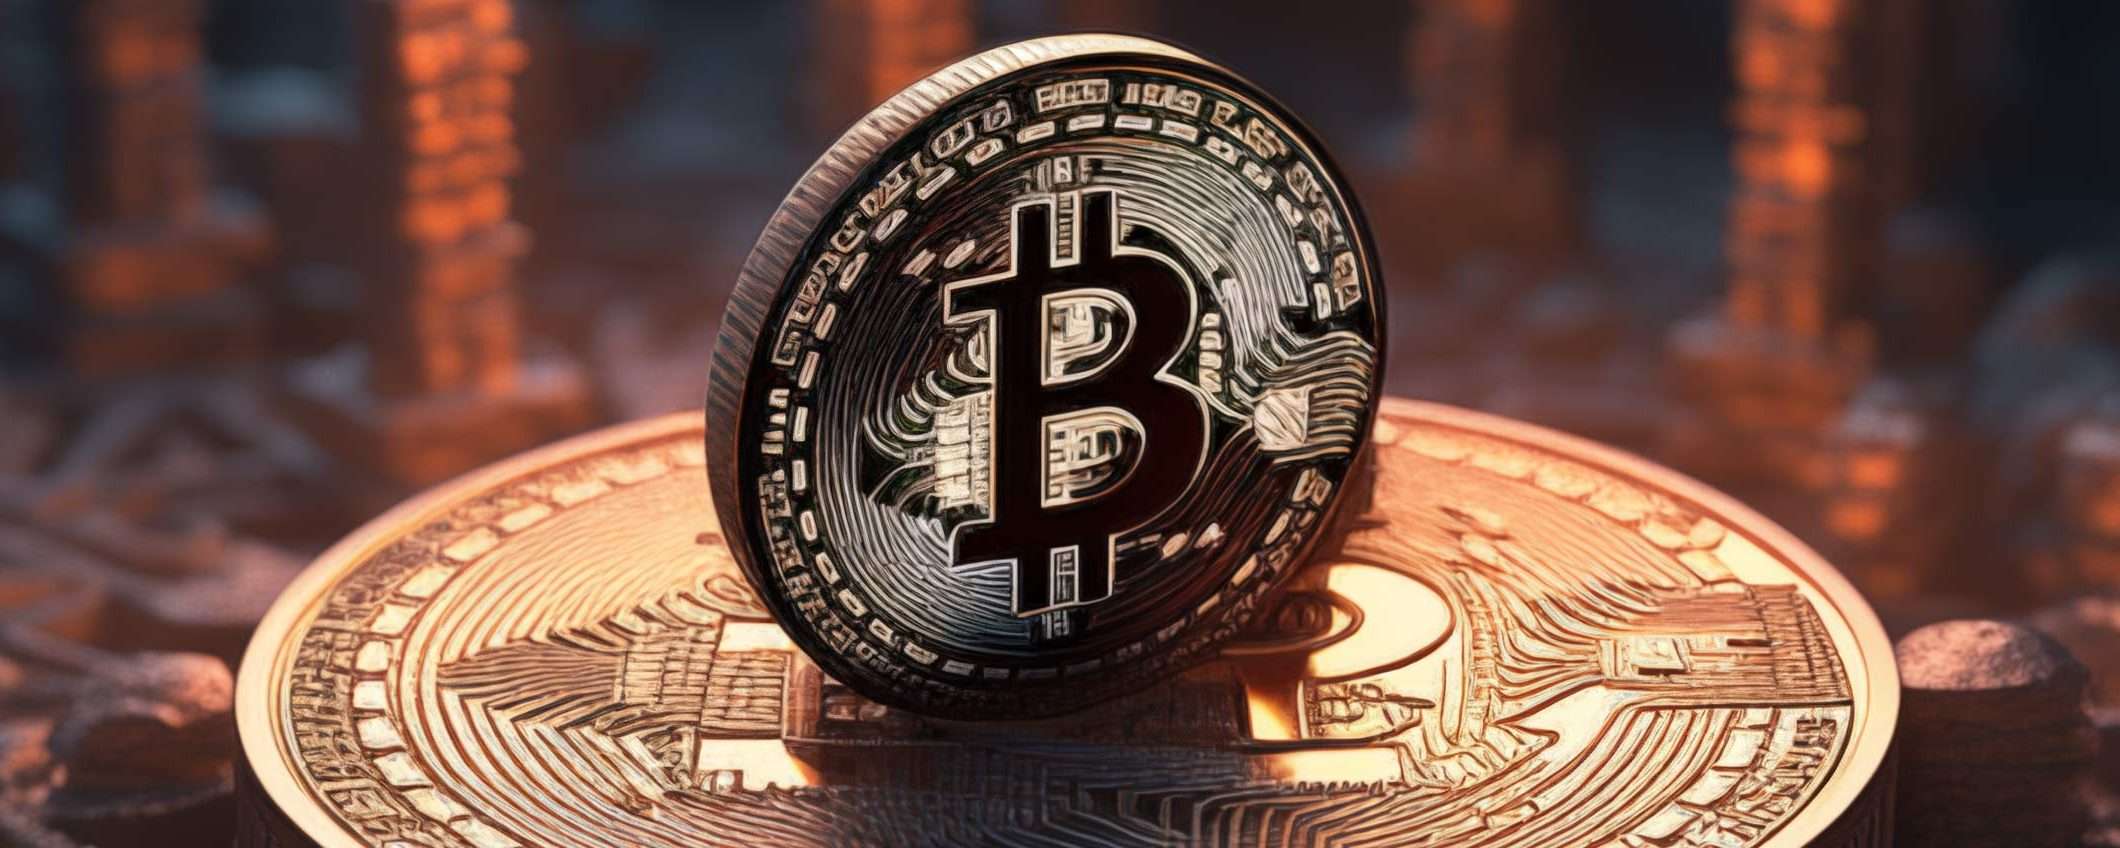 Il prezzo di Bitcoin torna sopra i 40000 dollari